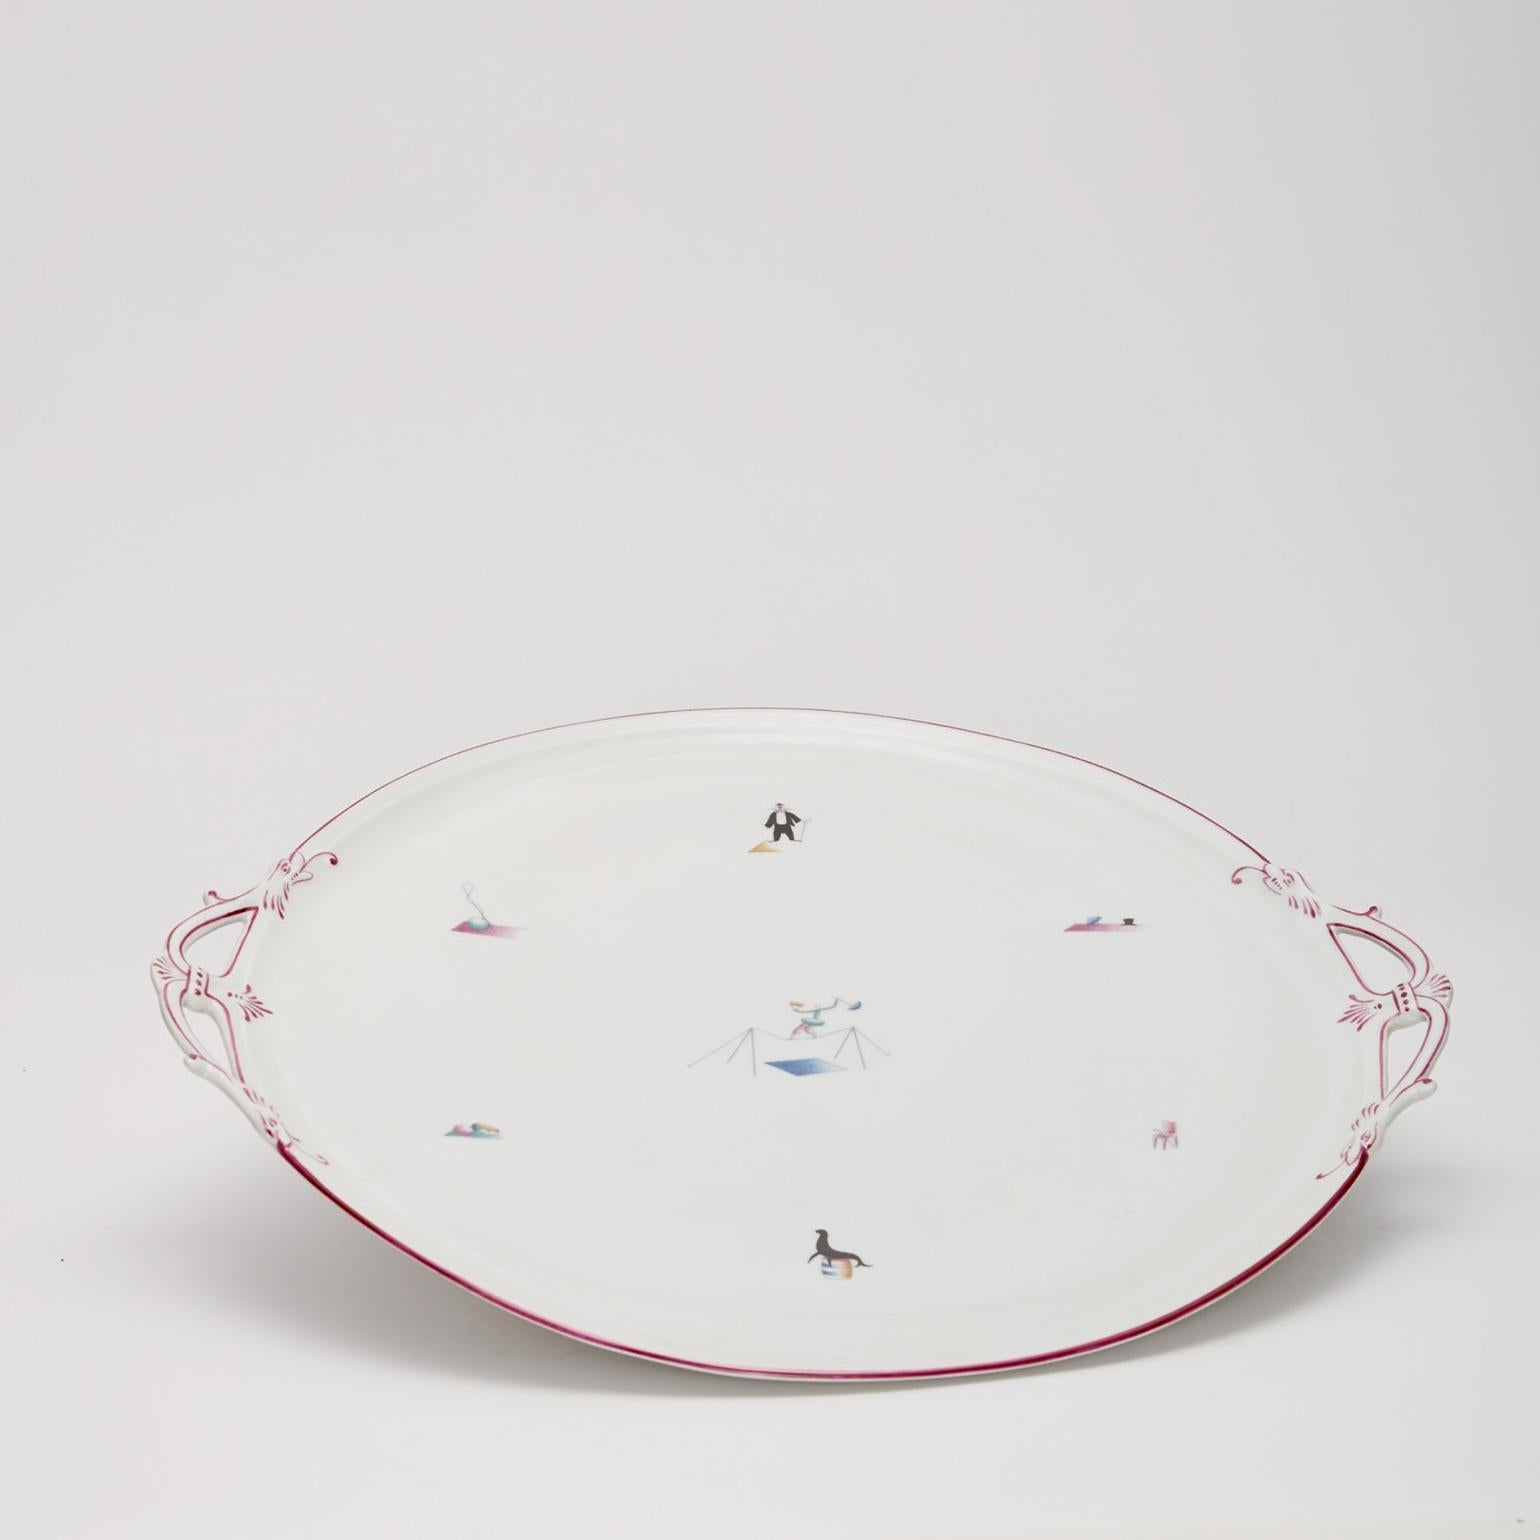 Mid-20th Century Gio Ponti porcelain 'Il Circo' Platter for Richard Ginori, Italy, 1934